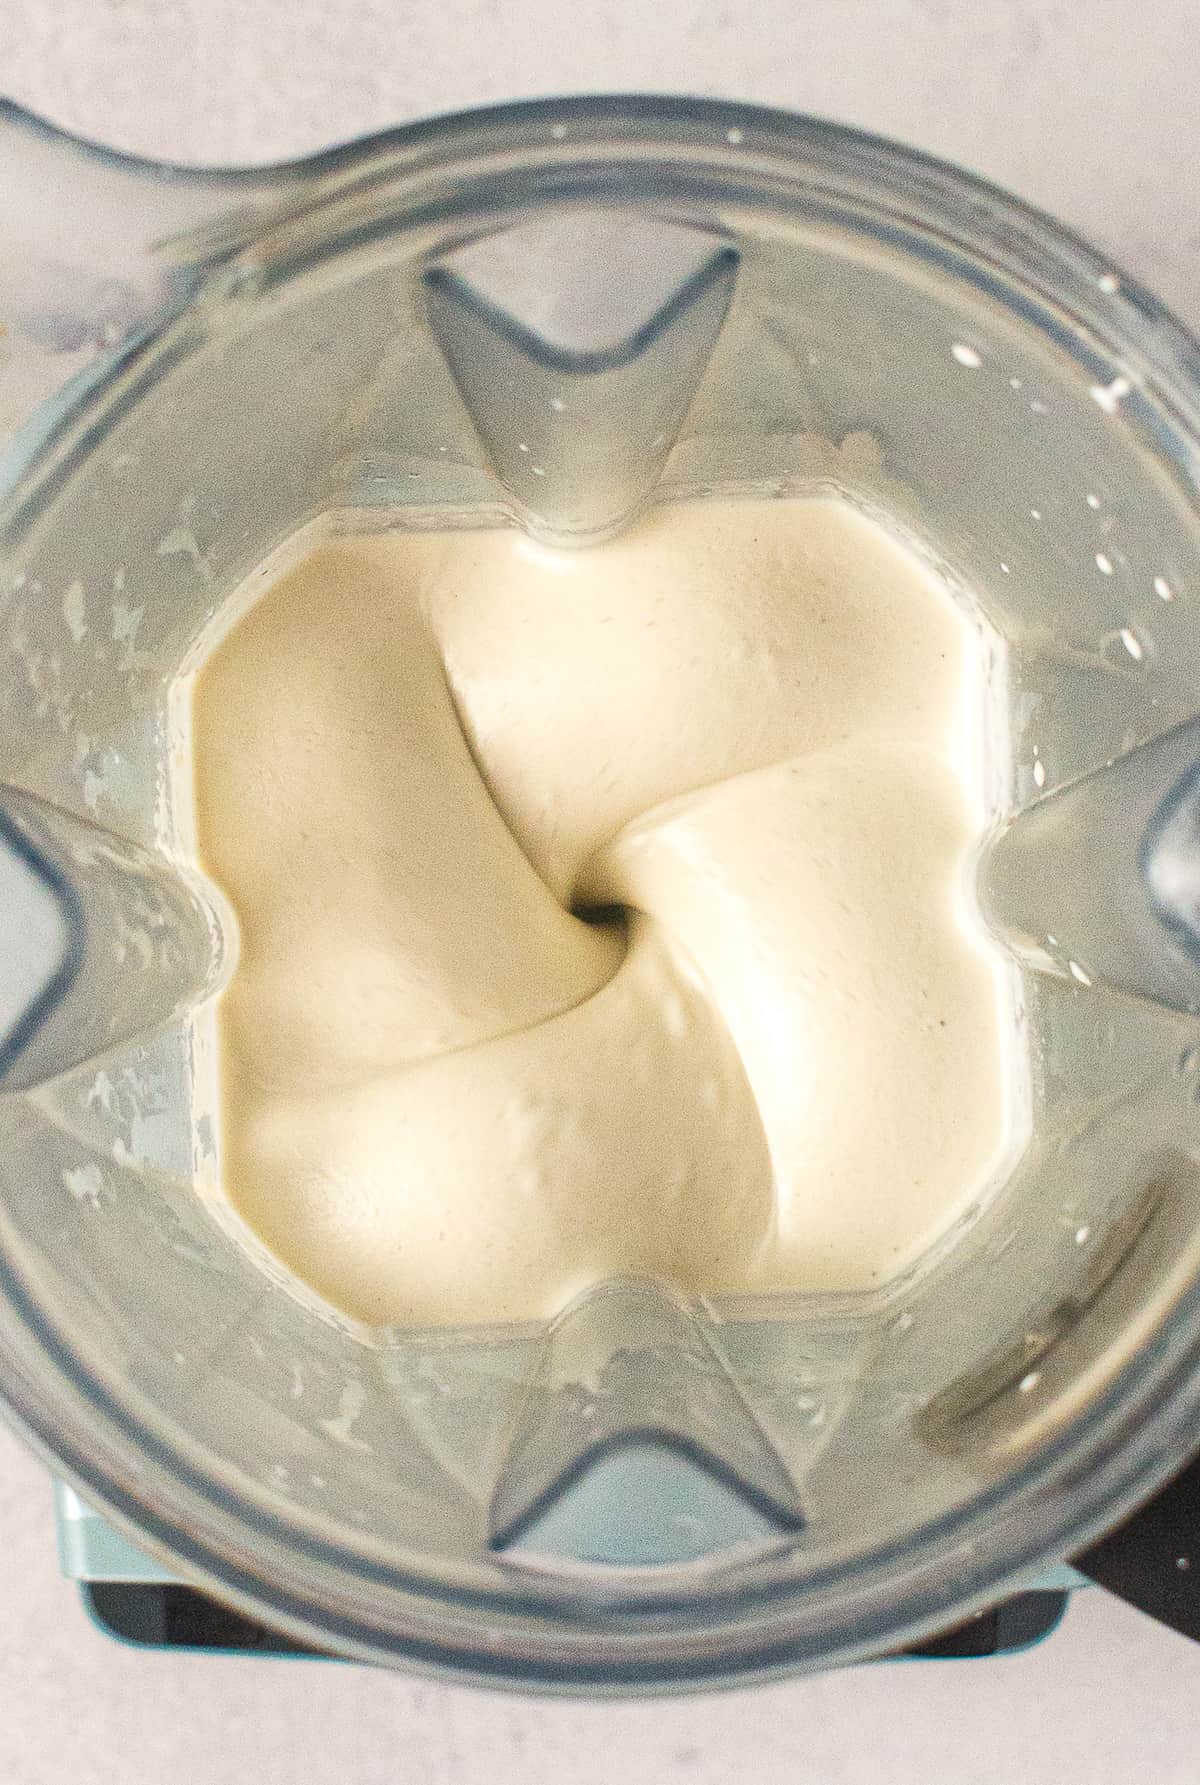 cashew cream in a blender